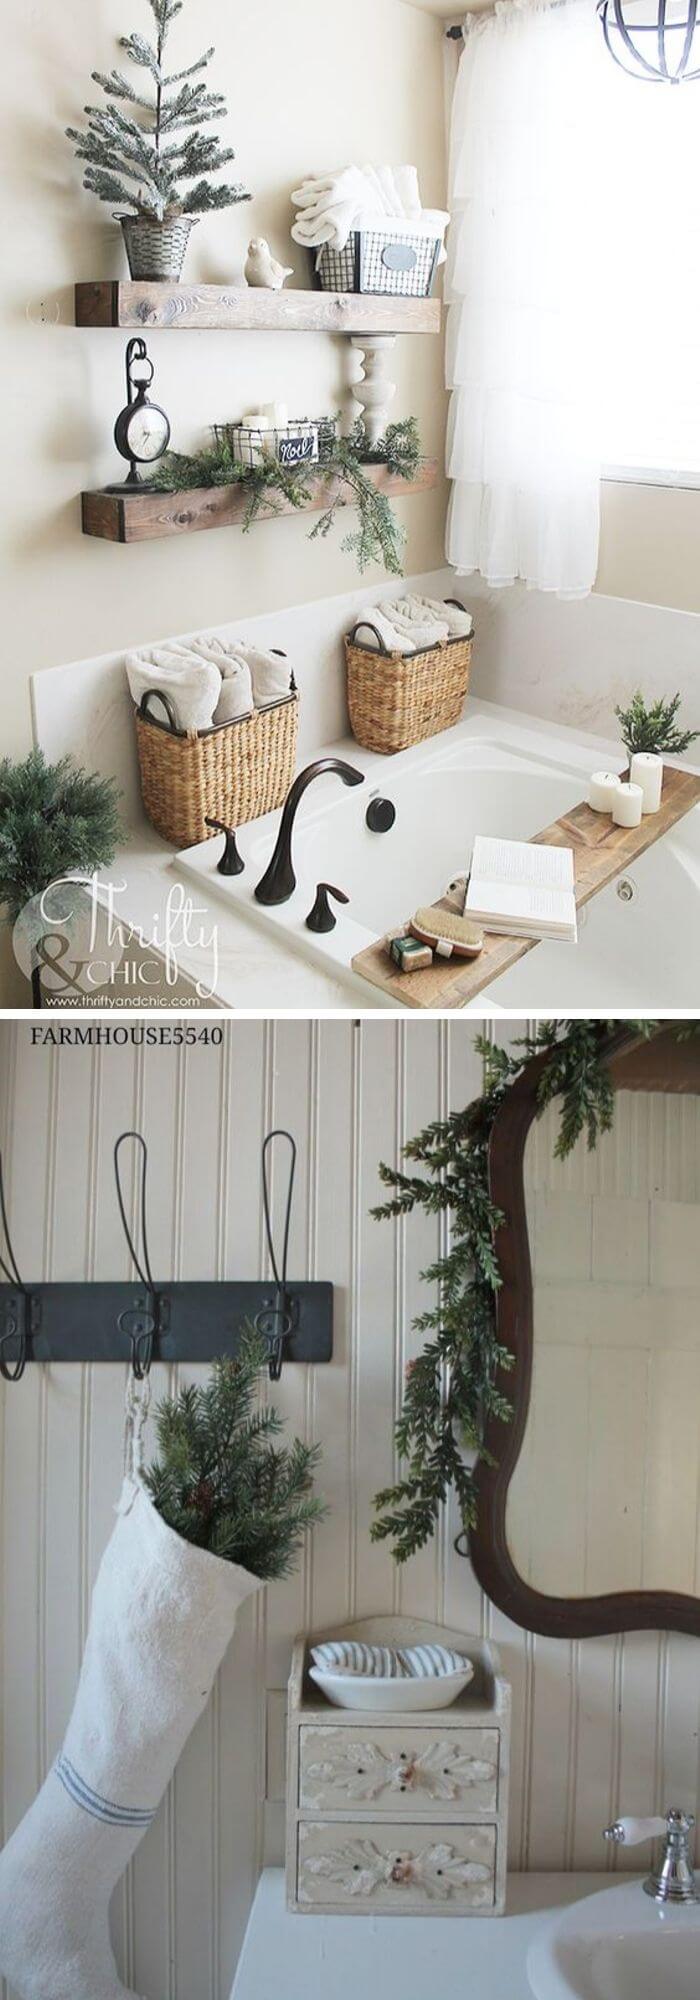 6 farmhouse winter decor ideas bathroom